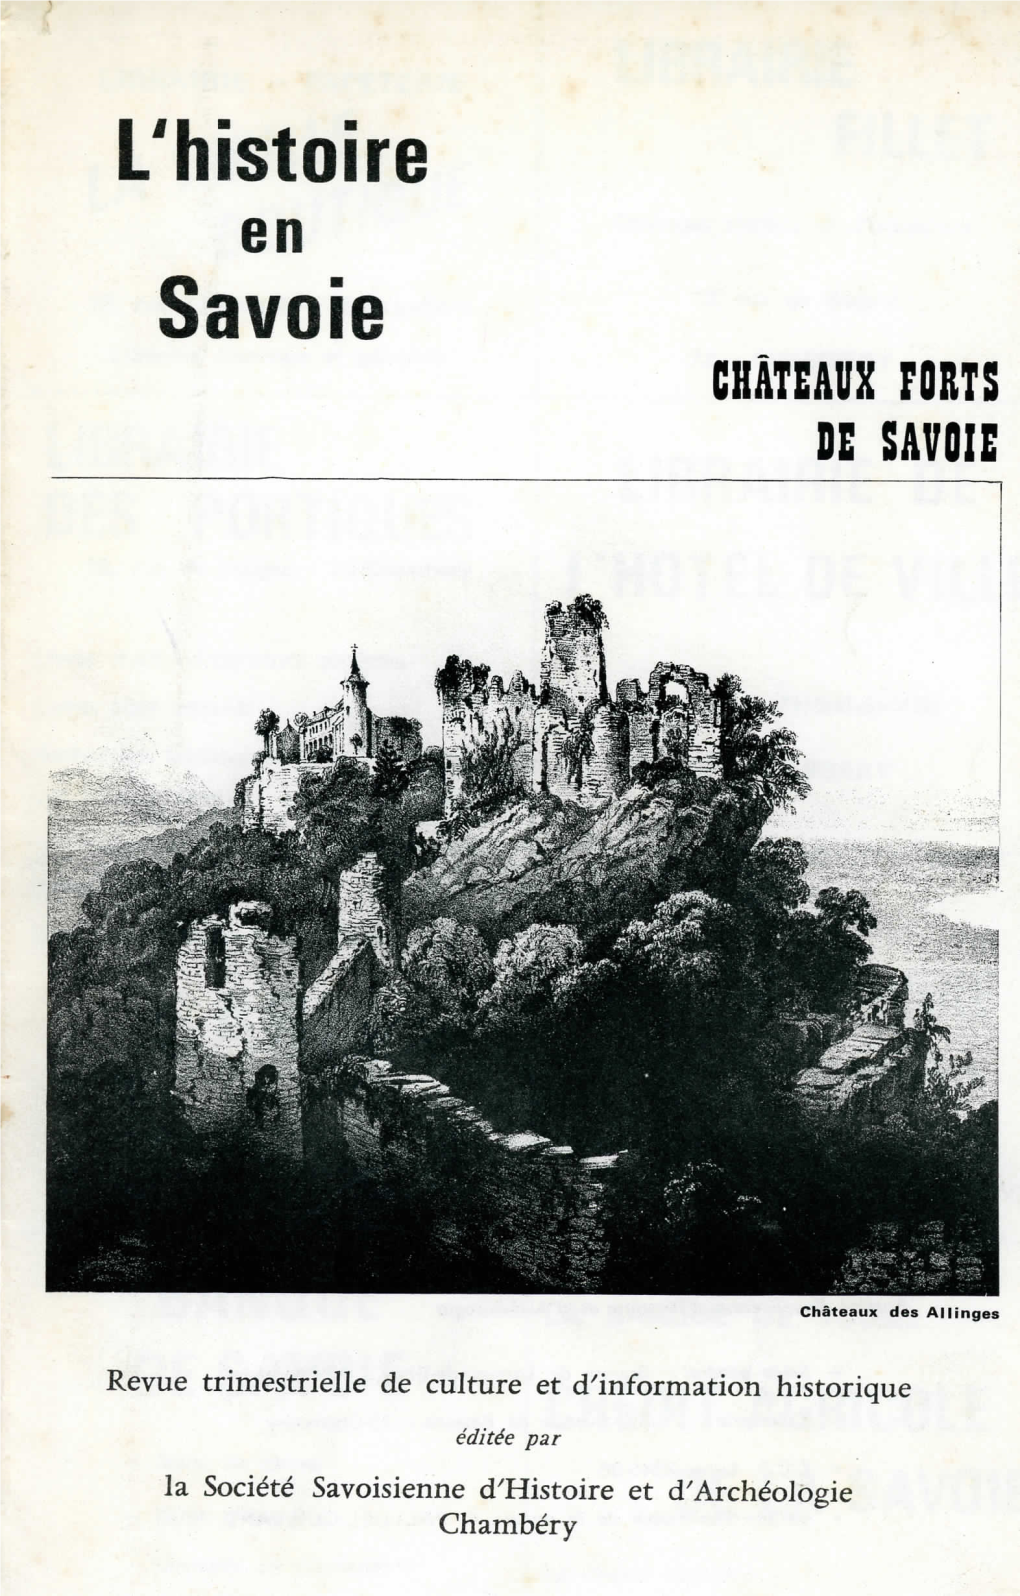 Savoie CHÂTEAUX Rosts DE SAVOIE